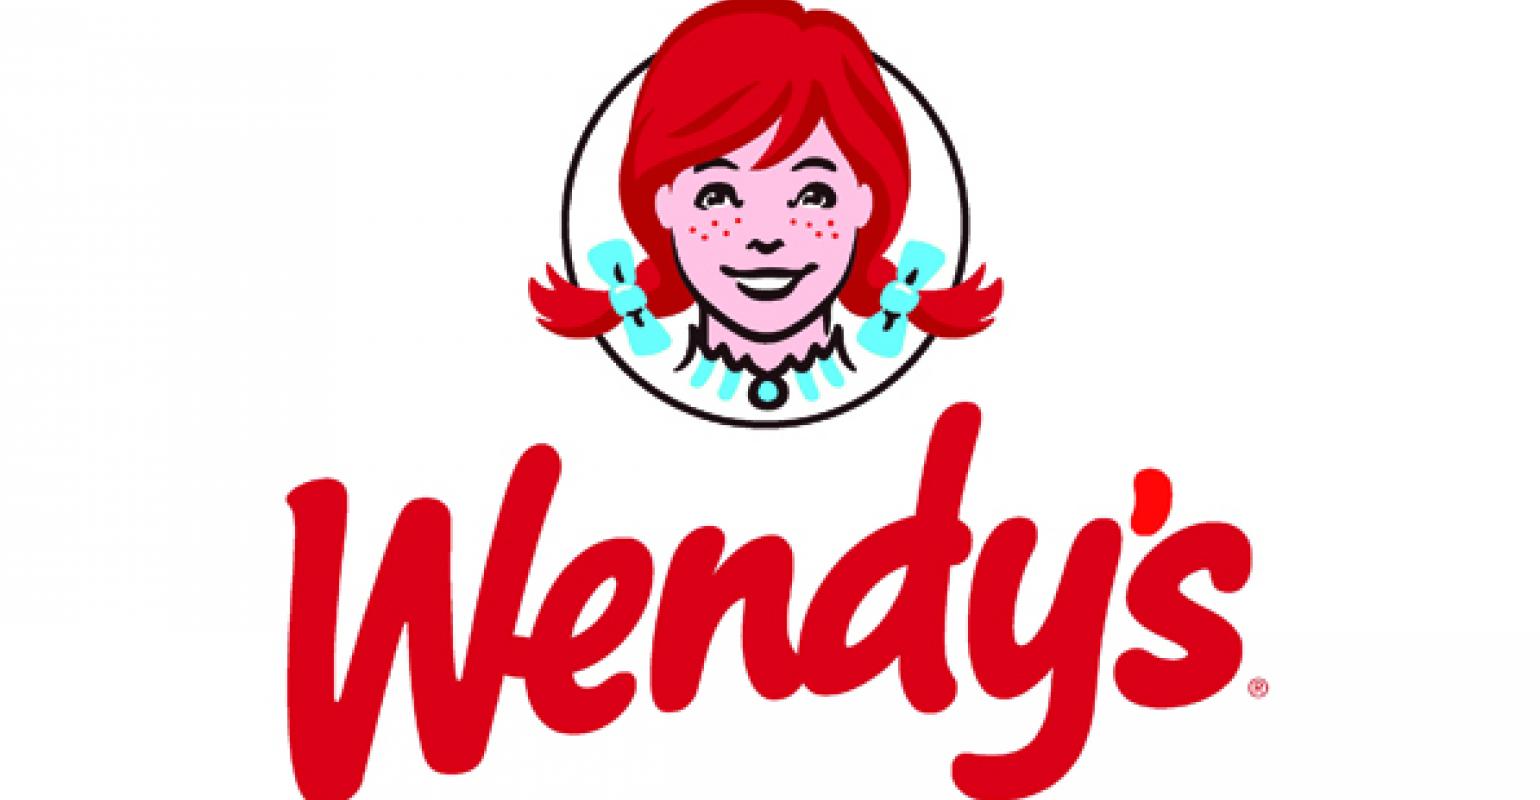 Behind Wendy's new logo, store design Nation's Restaurant News